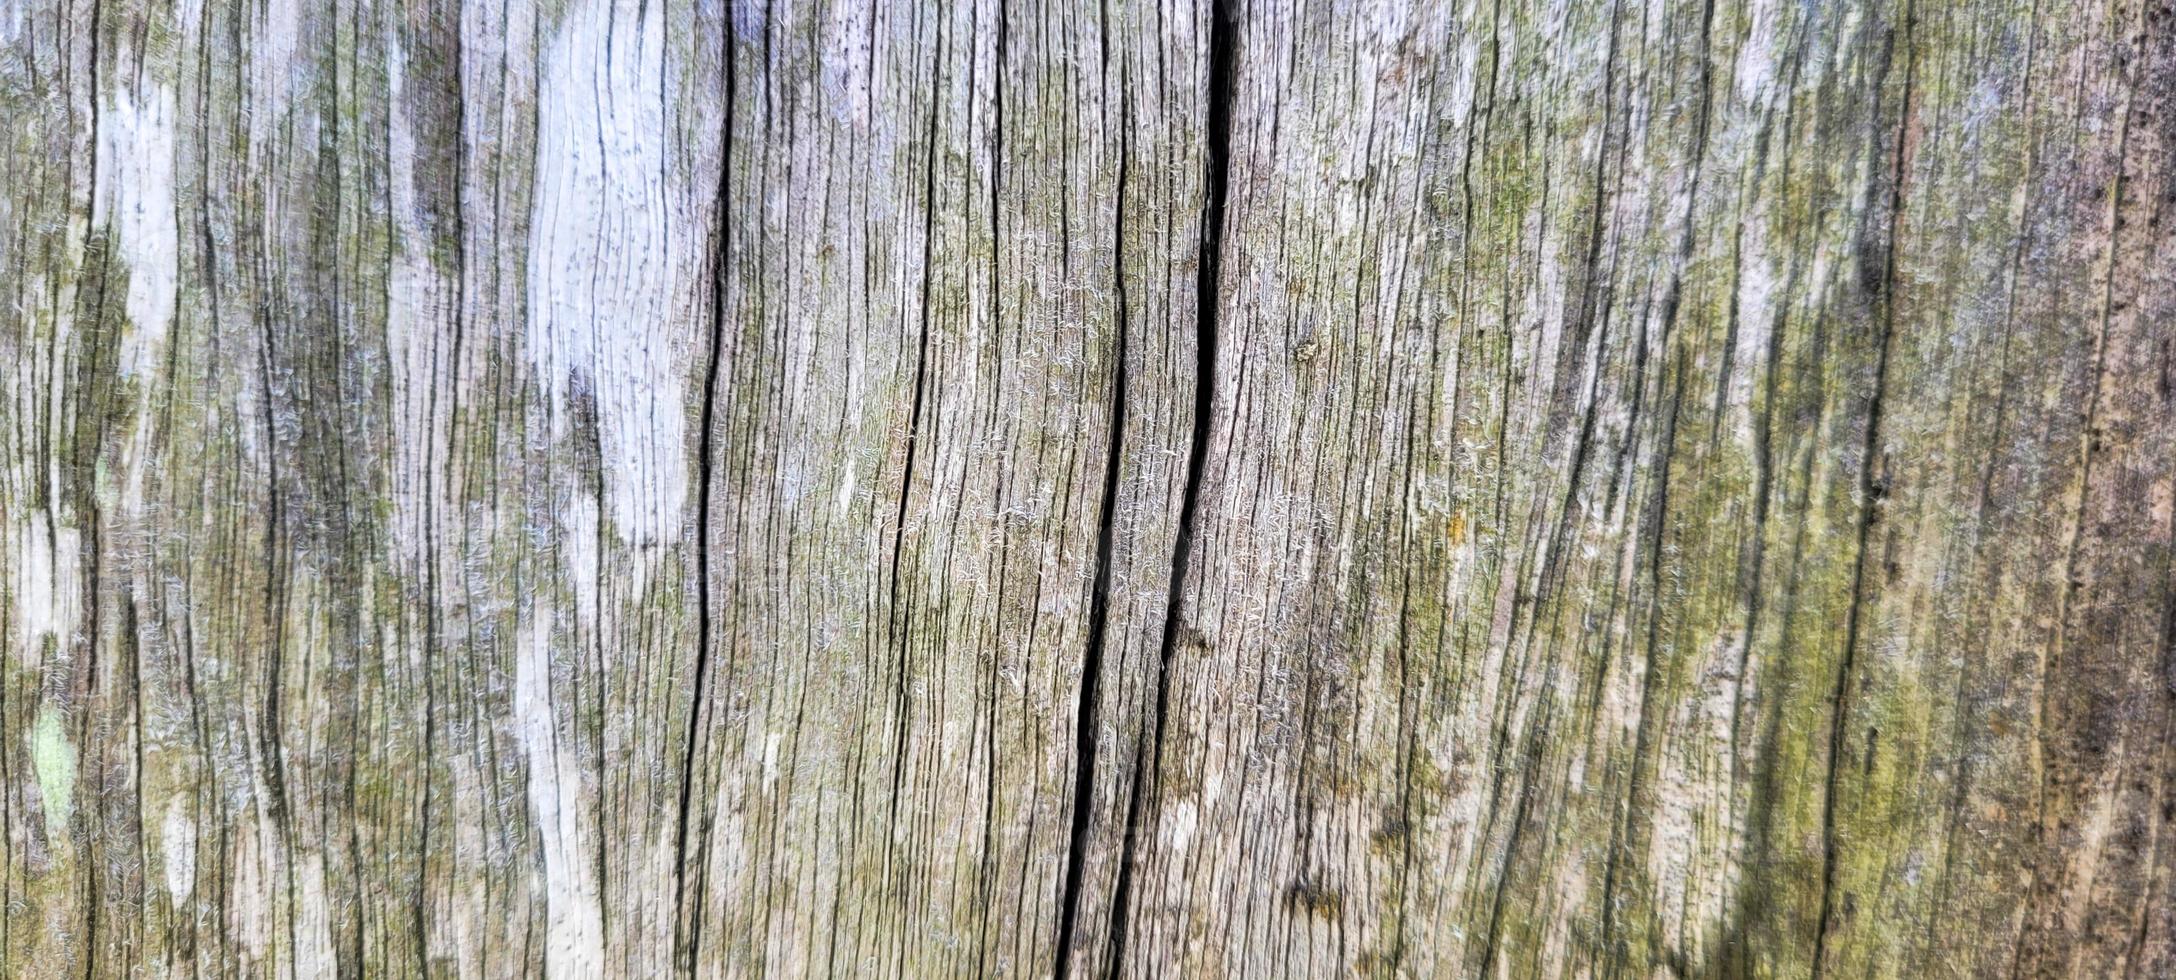 tronco de madeira velho rústico com textura foto